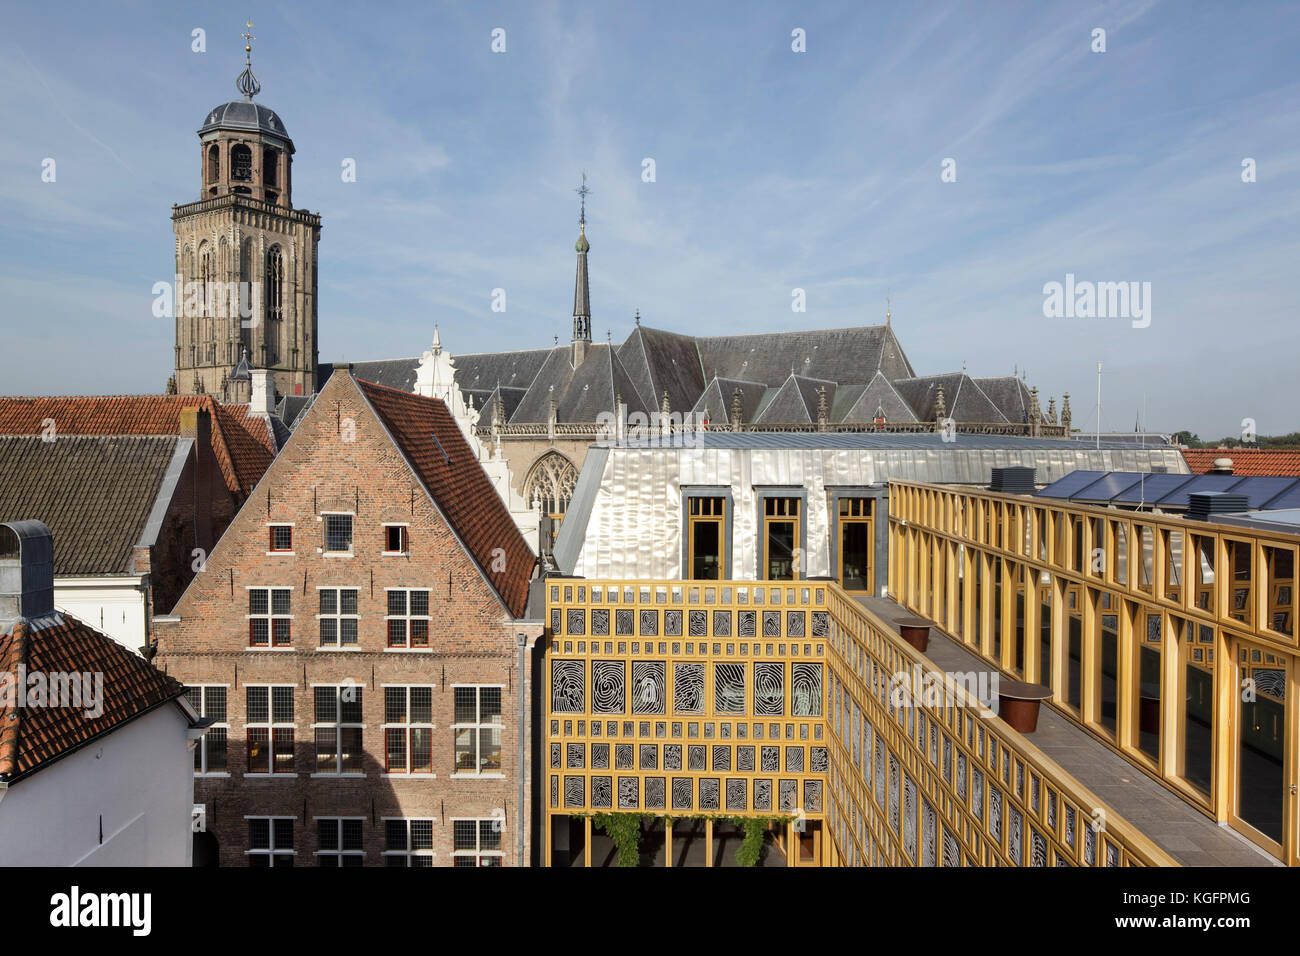 Vue depuis la passerelle sur le toit au-dessus des toits vers Grote Kerkhof. L'Hôtel de ville de Deventer, Deventer, Pays-Bas. Architecte : Neutelings Riedijk Architects, 20 Banque D'Images